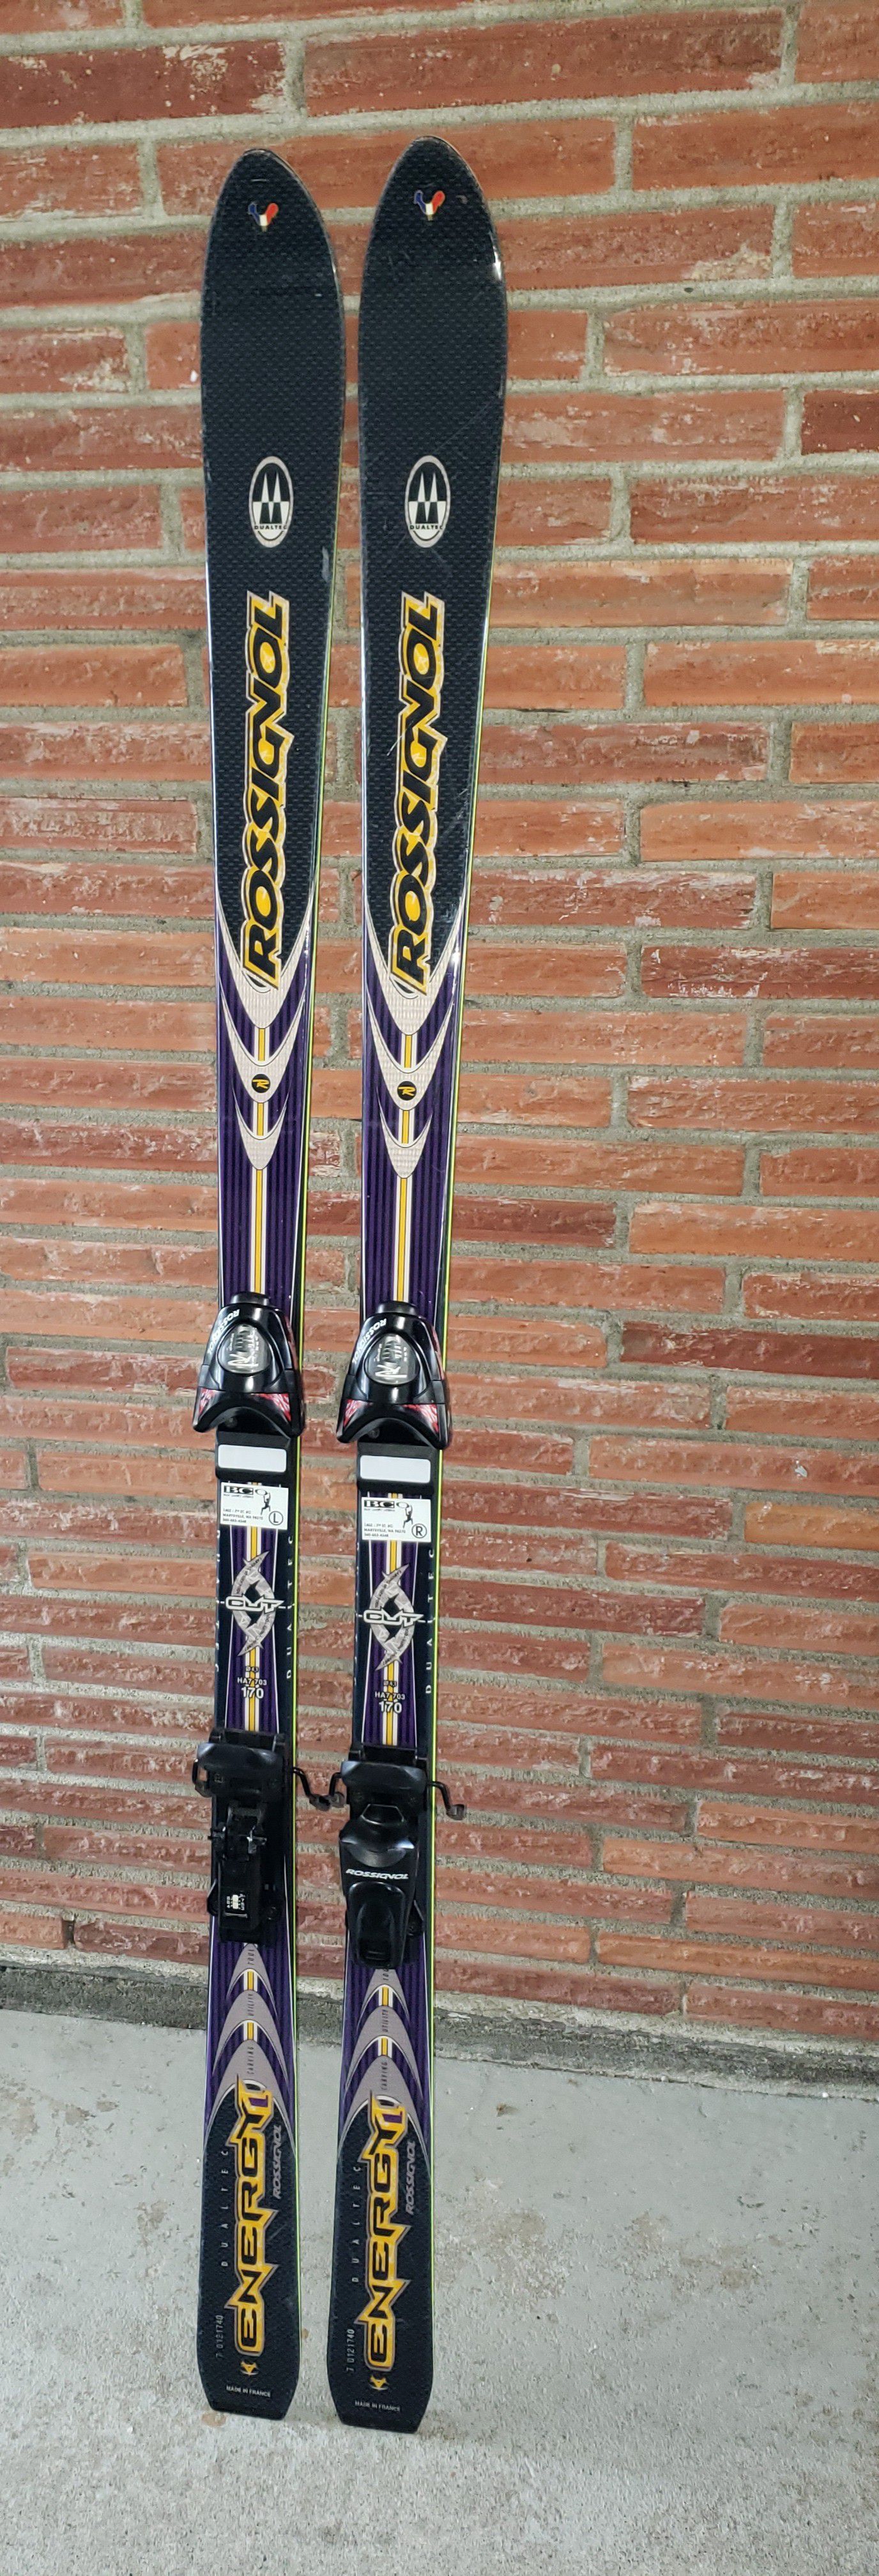 ROSSIGNOL Dualtec Energy CUT Skis w/Bindings, 170mm